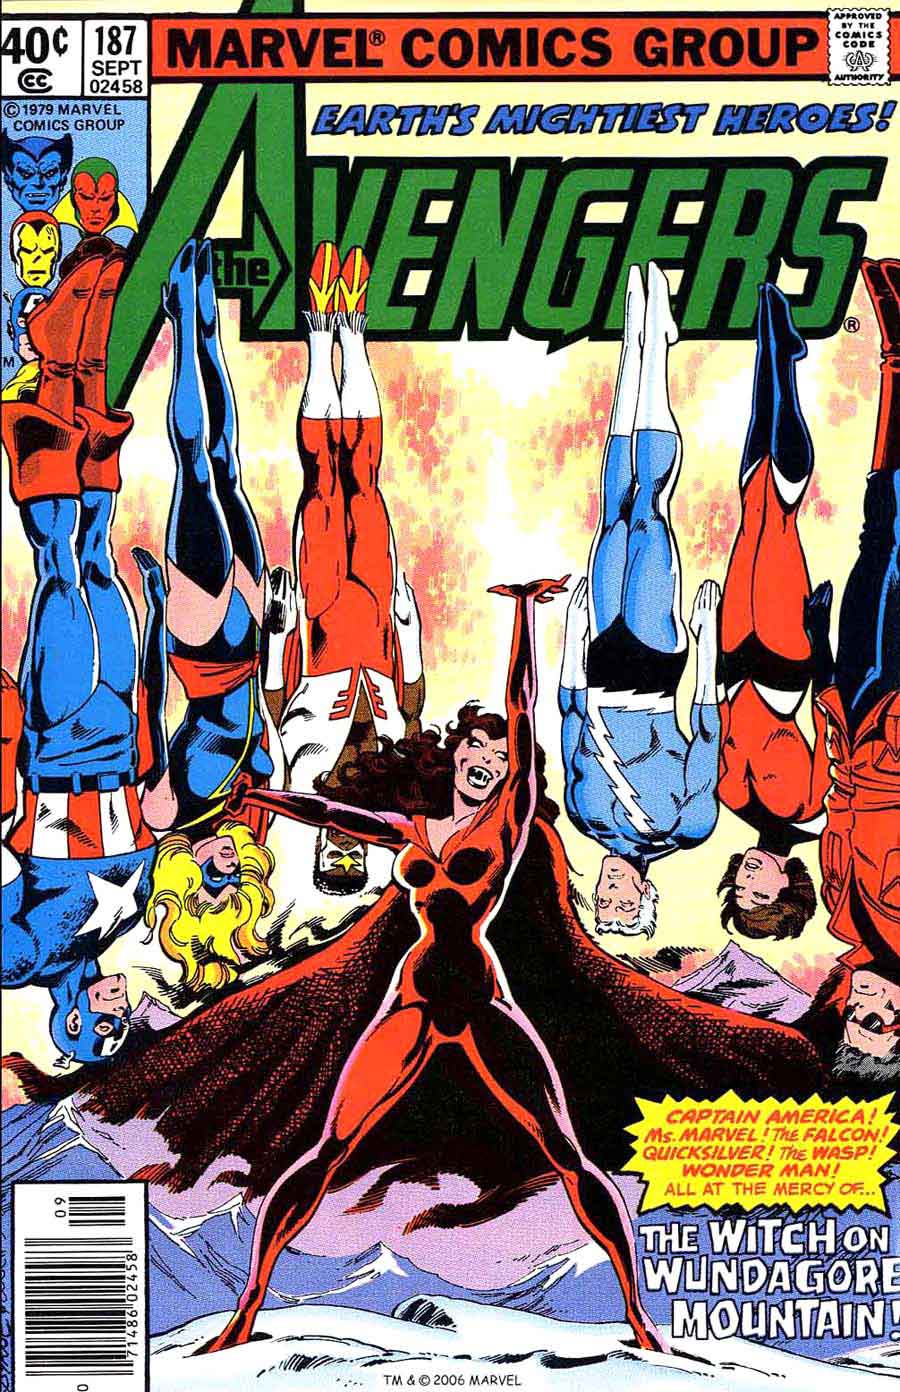 Avengers #187 marvel 1970s bronze age comic book cover art by John Byrne